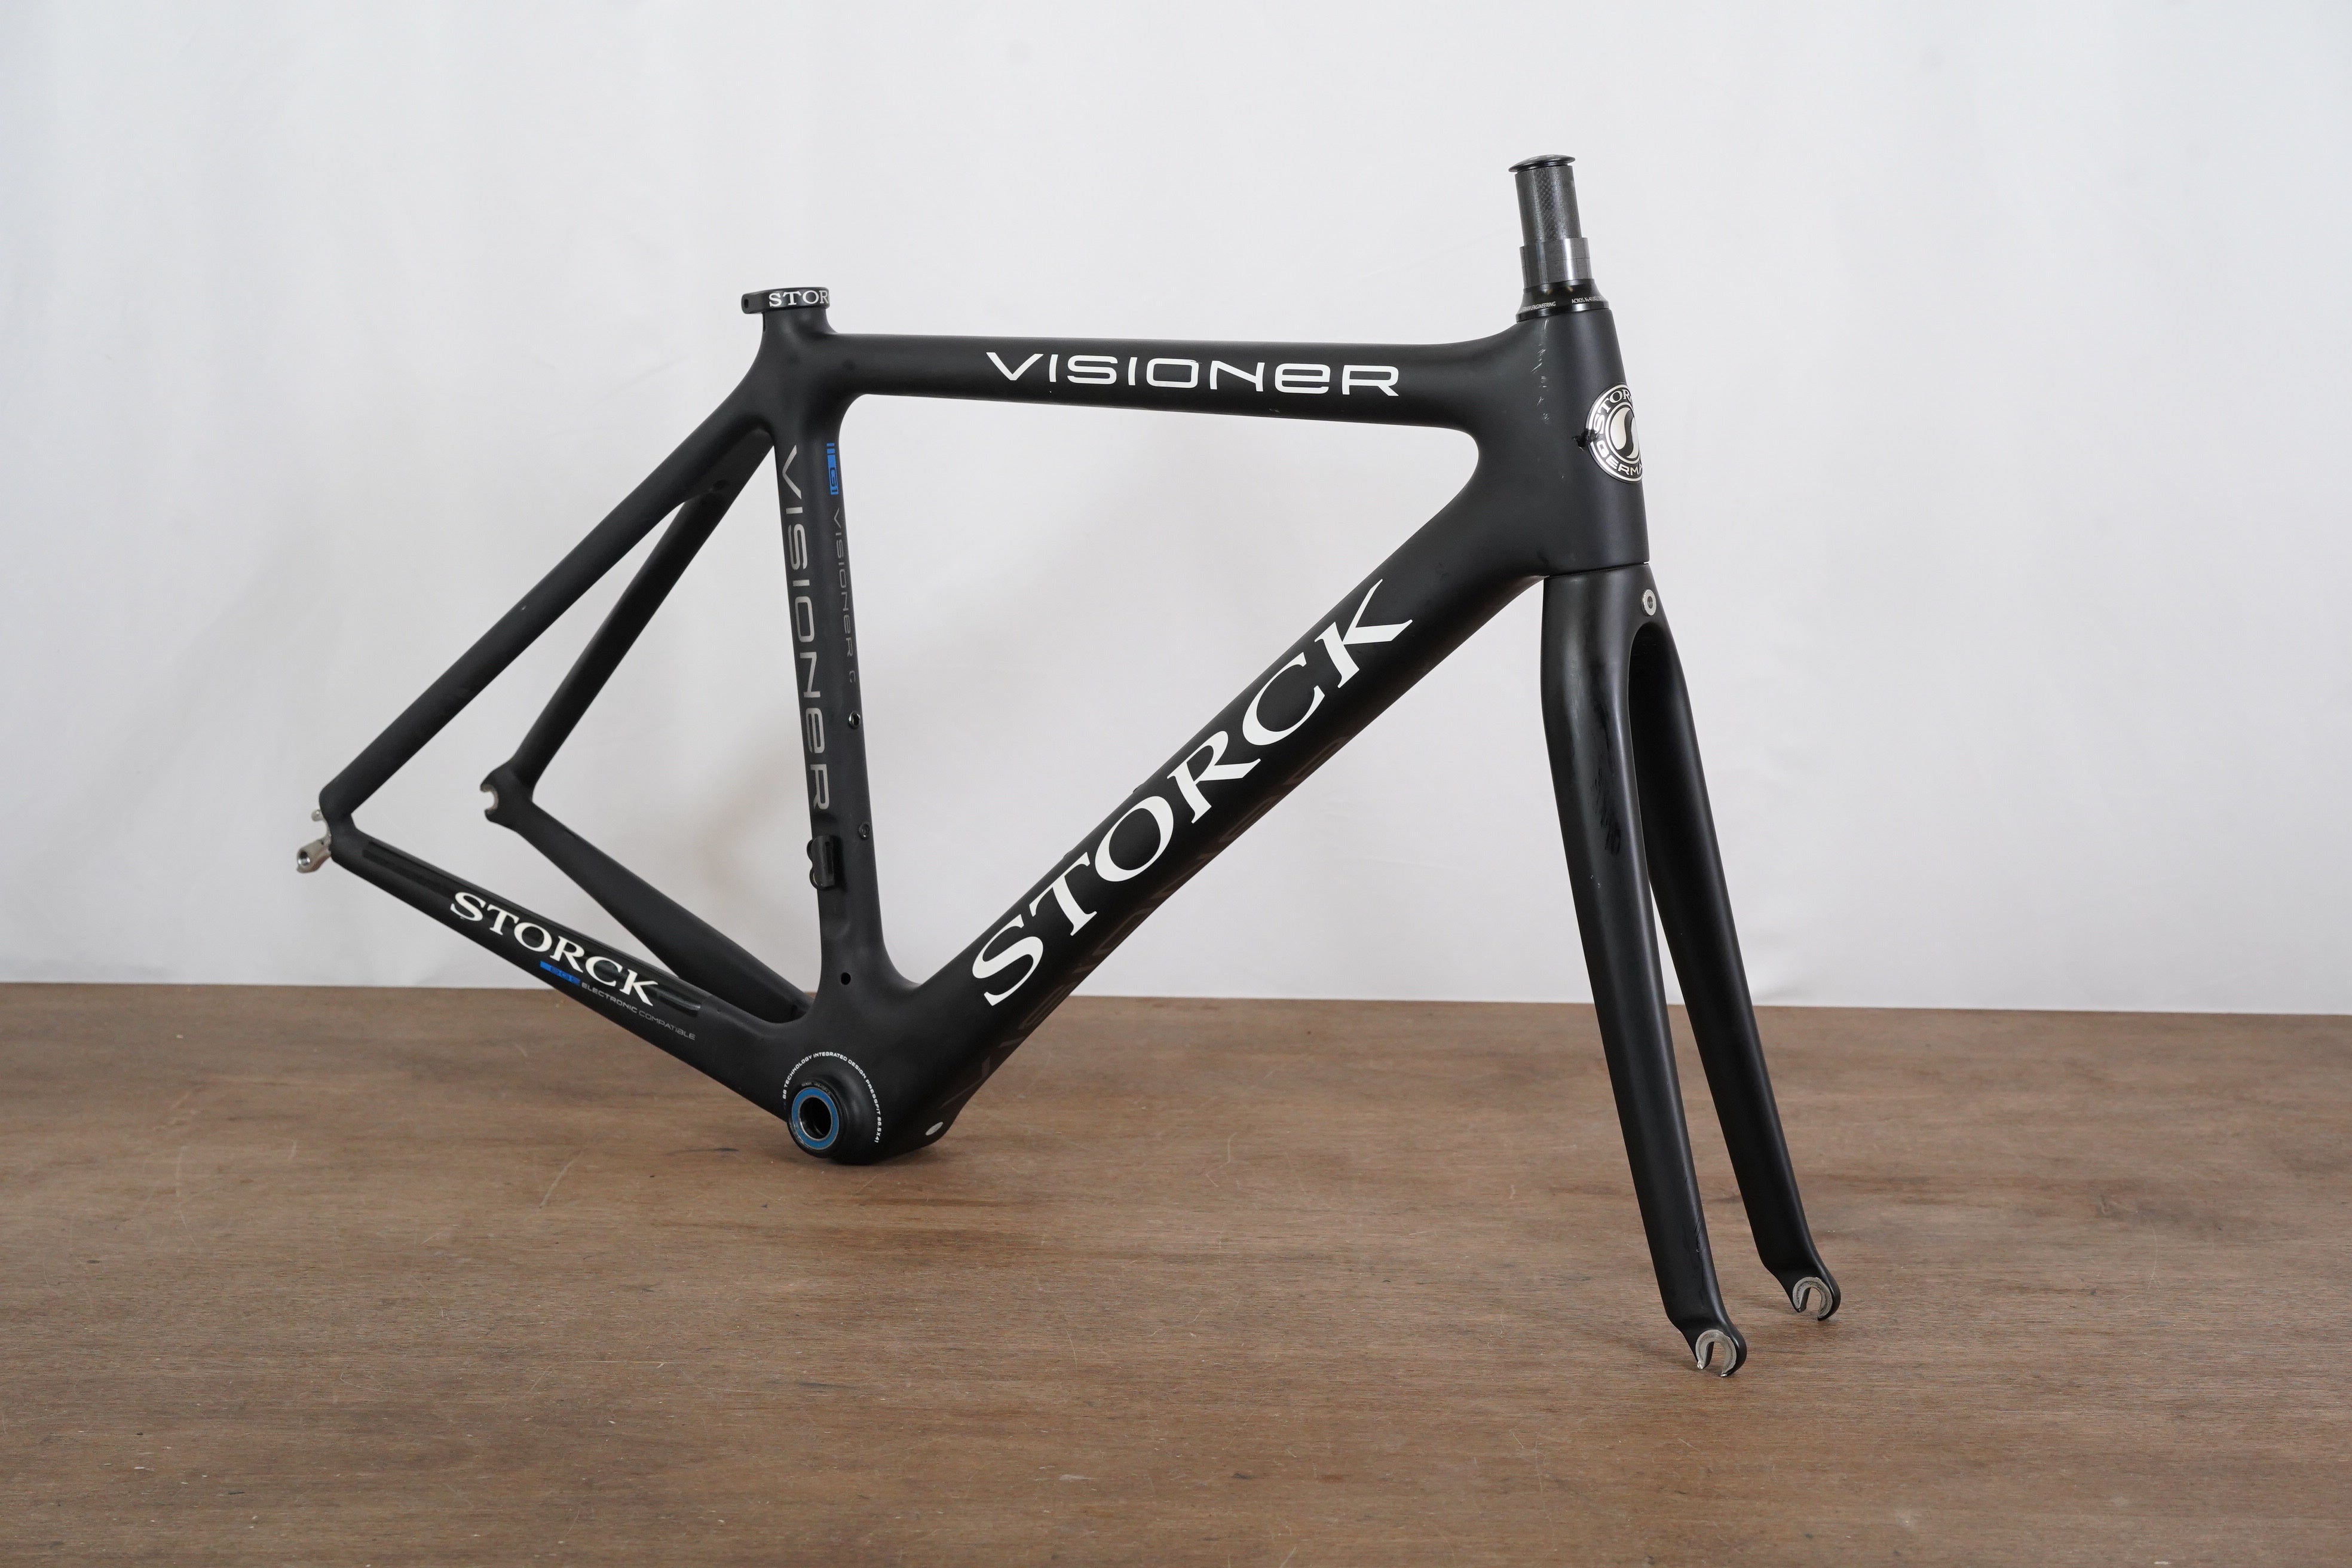 47cm Storck Visioner Carbon Rim Brake Road Frameset